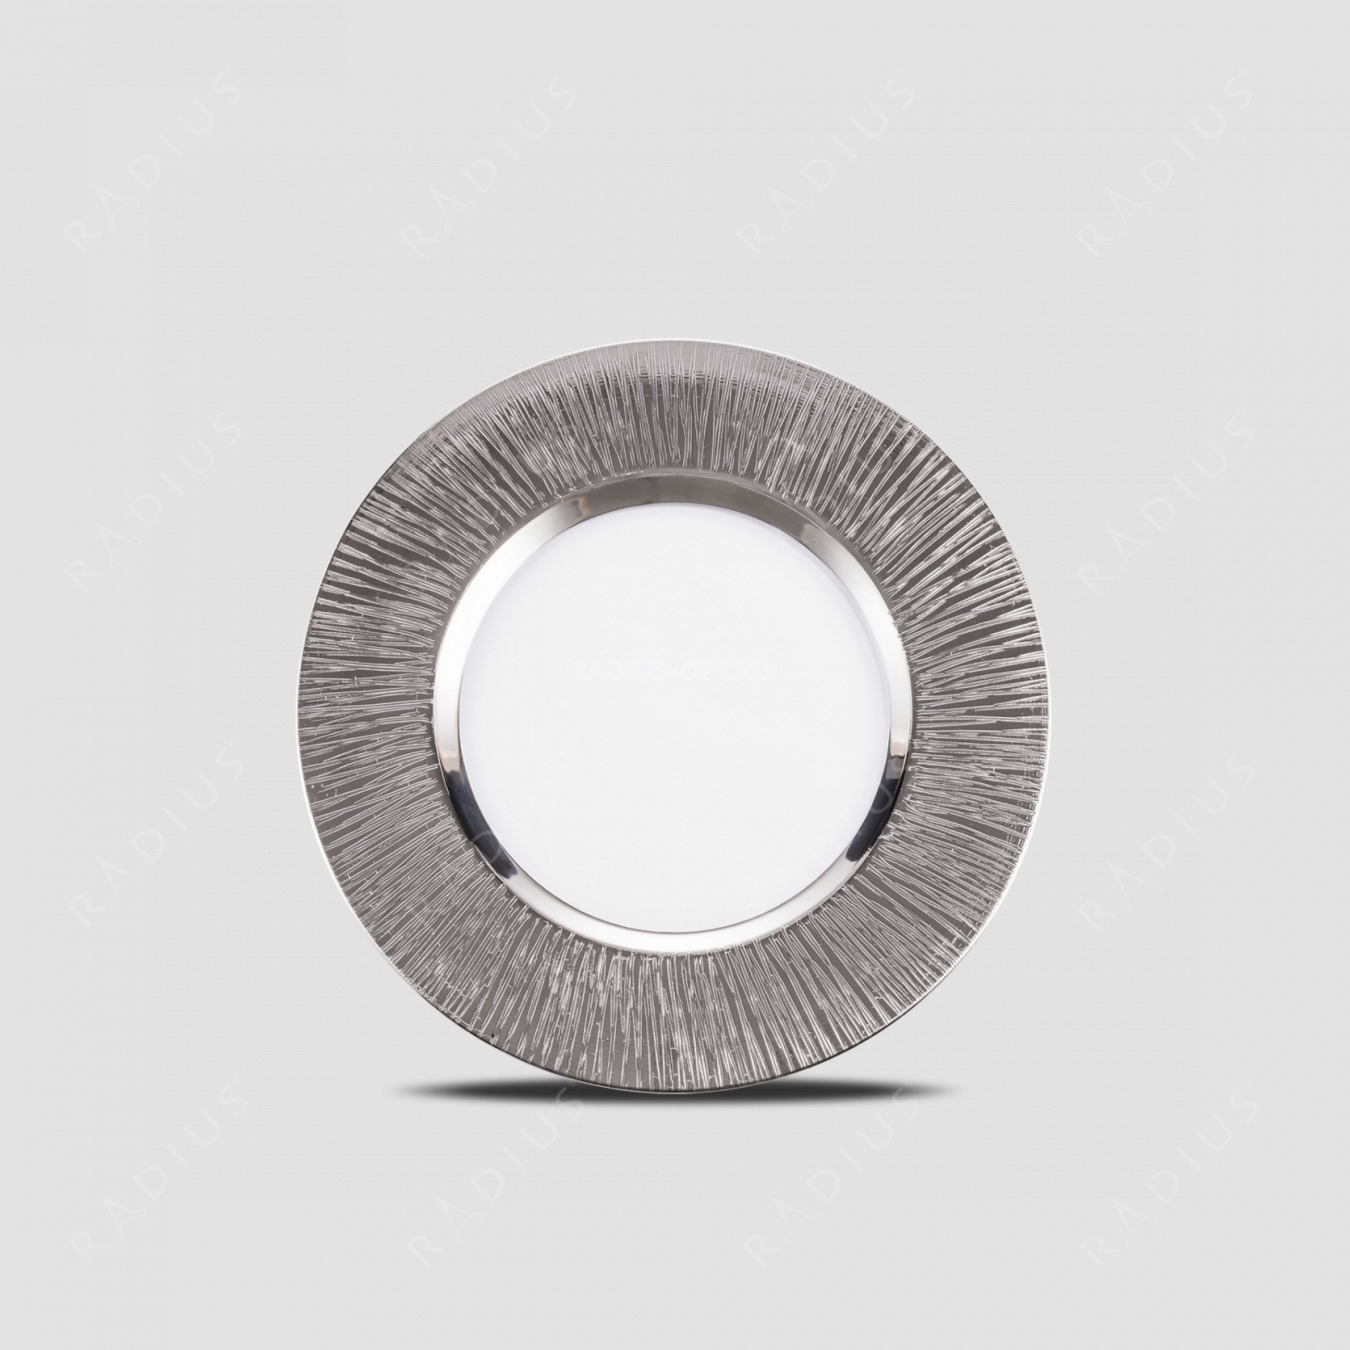 Тарелка подстановочная Platin, диаметр: 35 см, материал: бессвинцовый хрусталь, цвет: прозрачный/платина, серия Ravi, EISCH, Германия